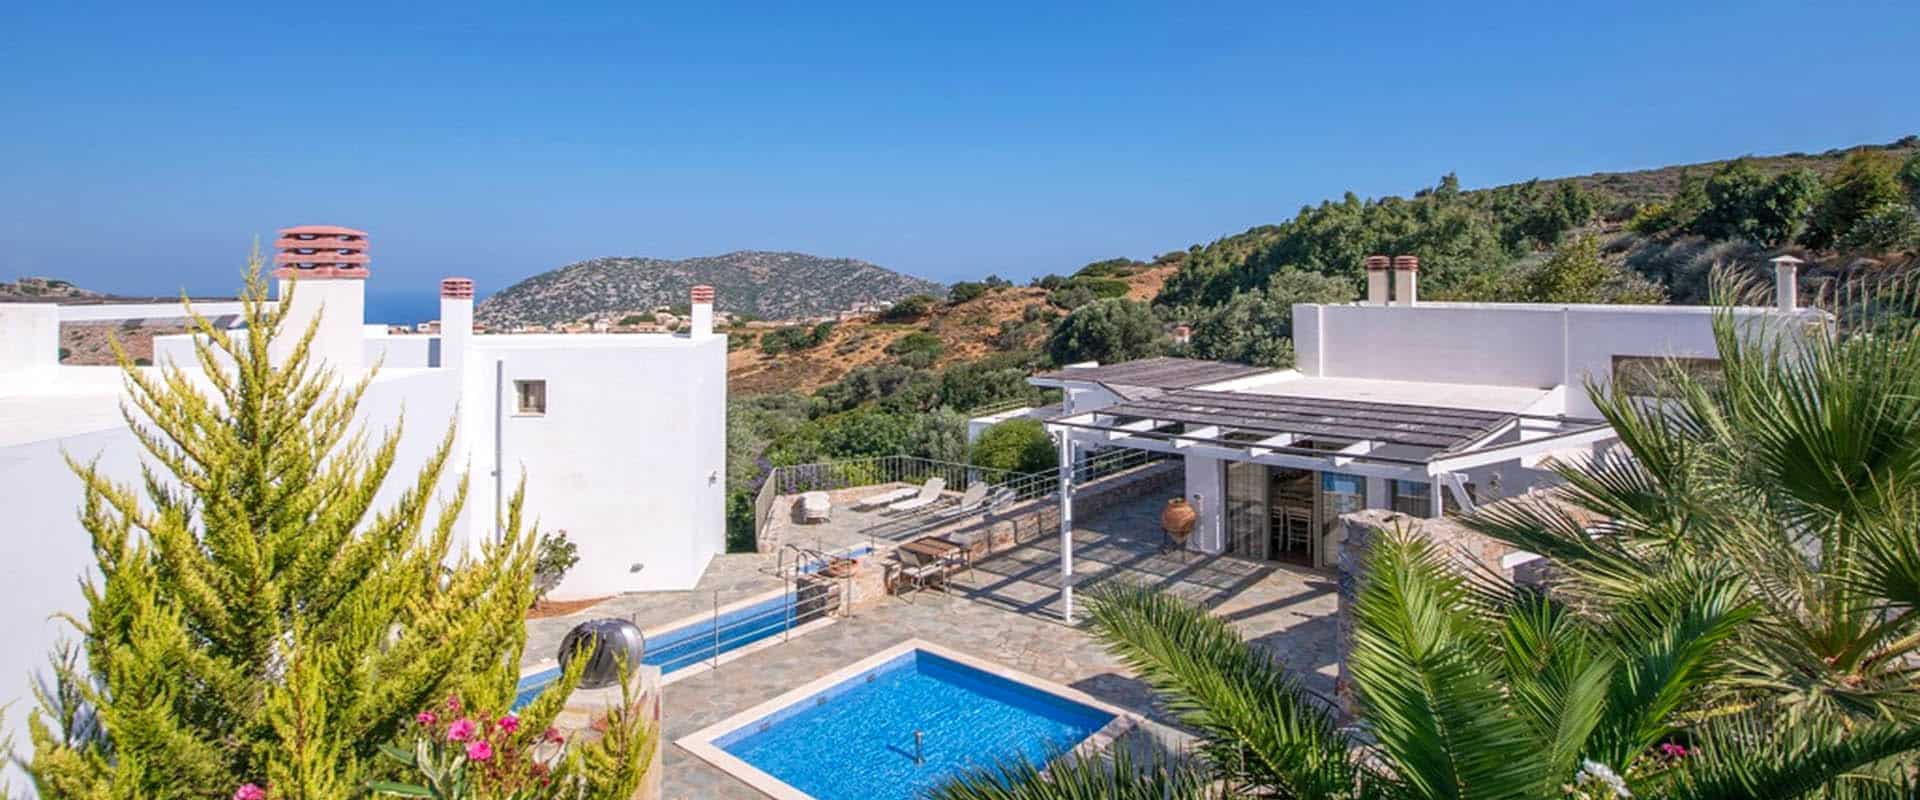 økoturisme ferie hotel bæredygtig turisme Kreta Grækenland